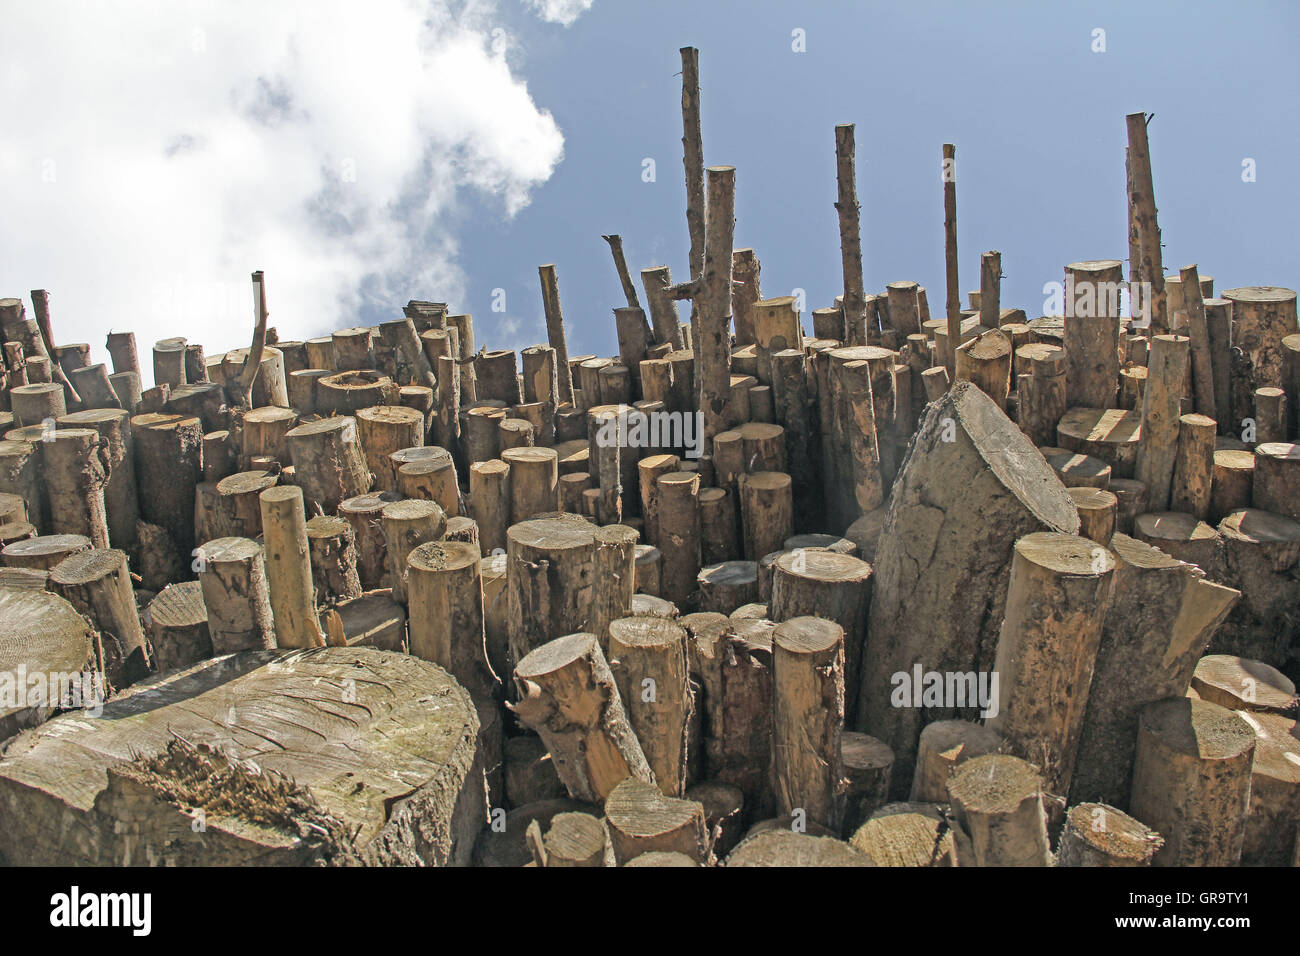 Pile de bois dans la région de Carinthie, Autriche Banque D'Images